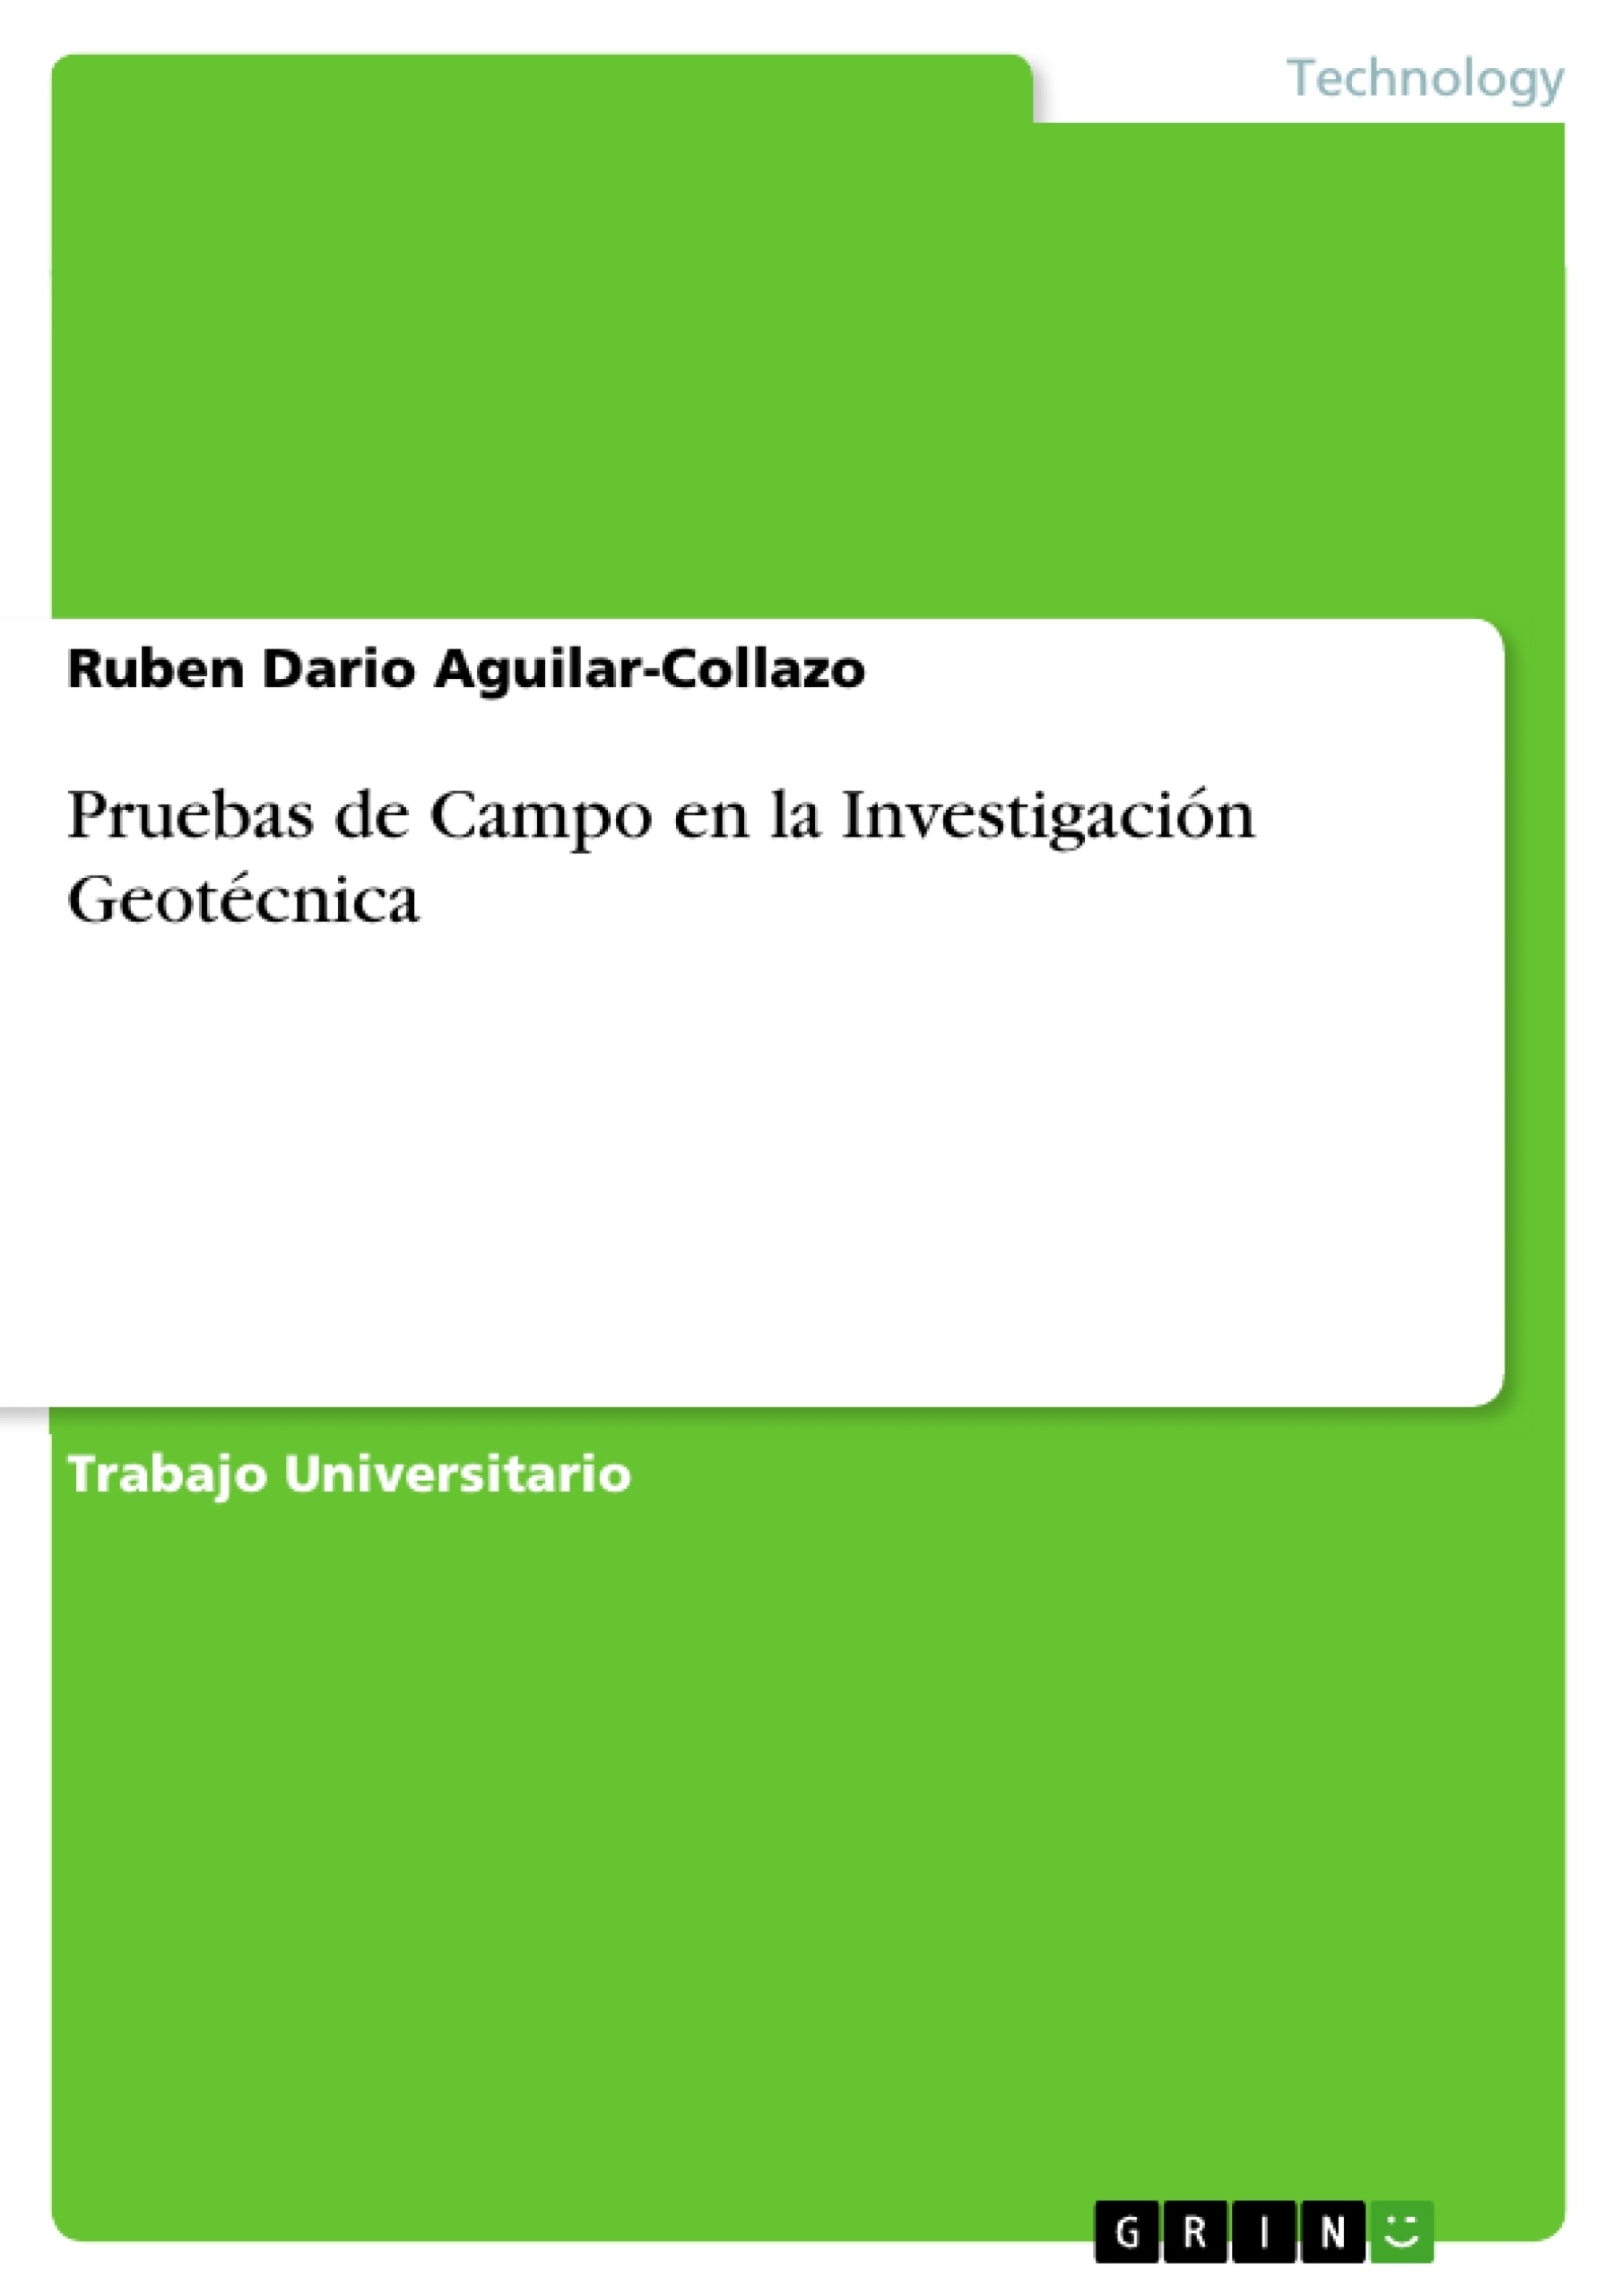 Titre: Pruebas de Campo en la Investigación Geotécnica